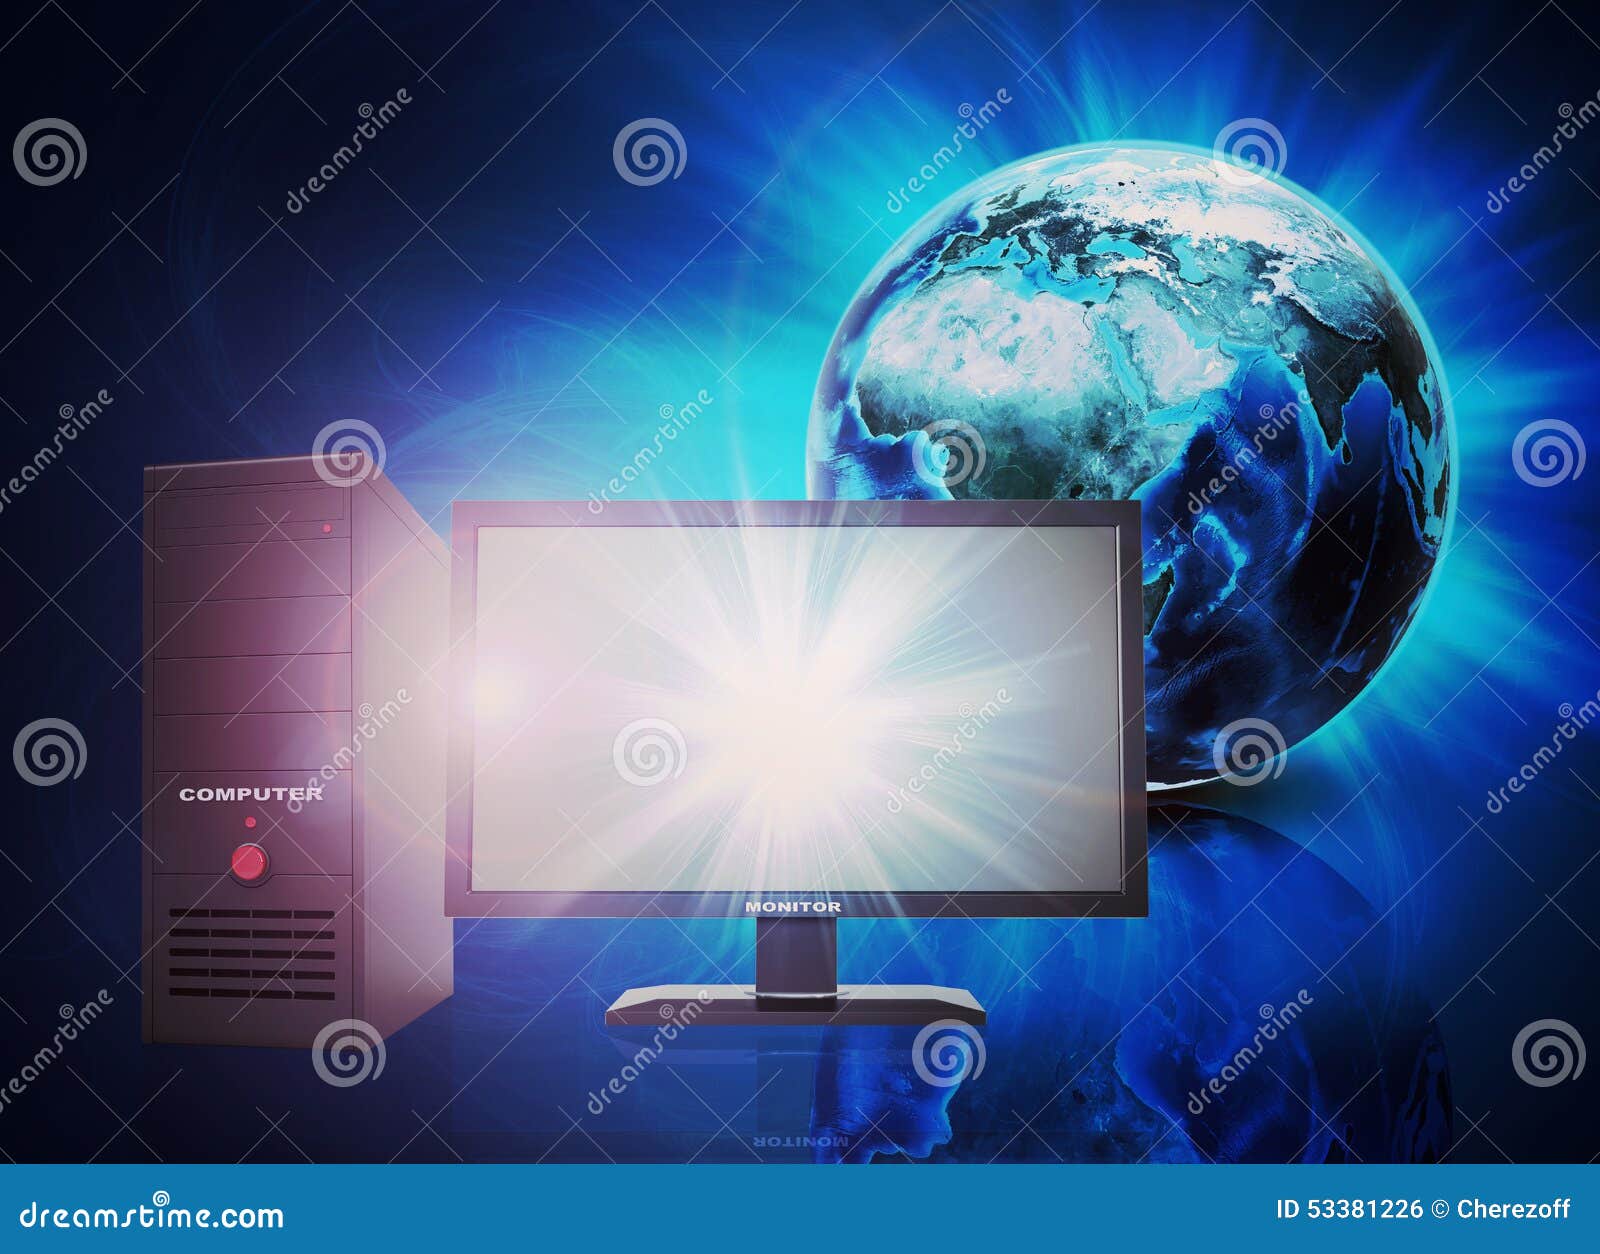 Aarde op abstracte blauwe achtergrond met PC-computer. Aarde en gloed op abstracte blauwe achtergrond met PC-computer Elementen van dit die beeld door NASA wordt geleverd